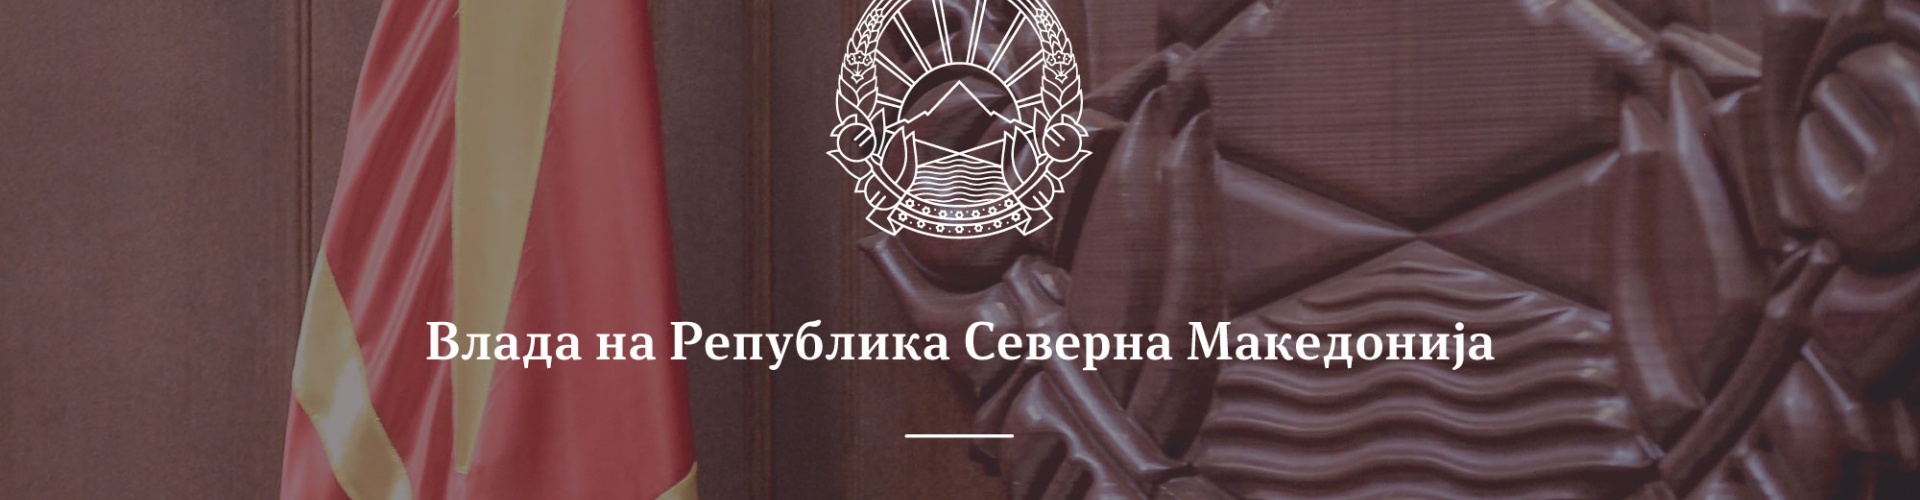 Владата постапи законски и ги поништи незаконските решенија на министерот Чулев